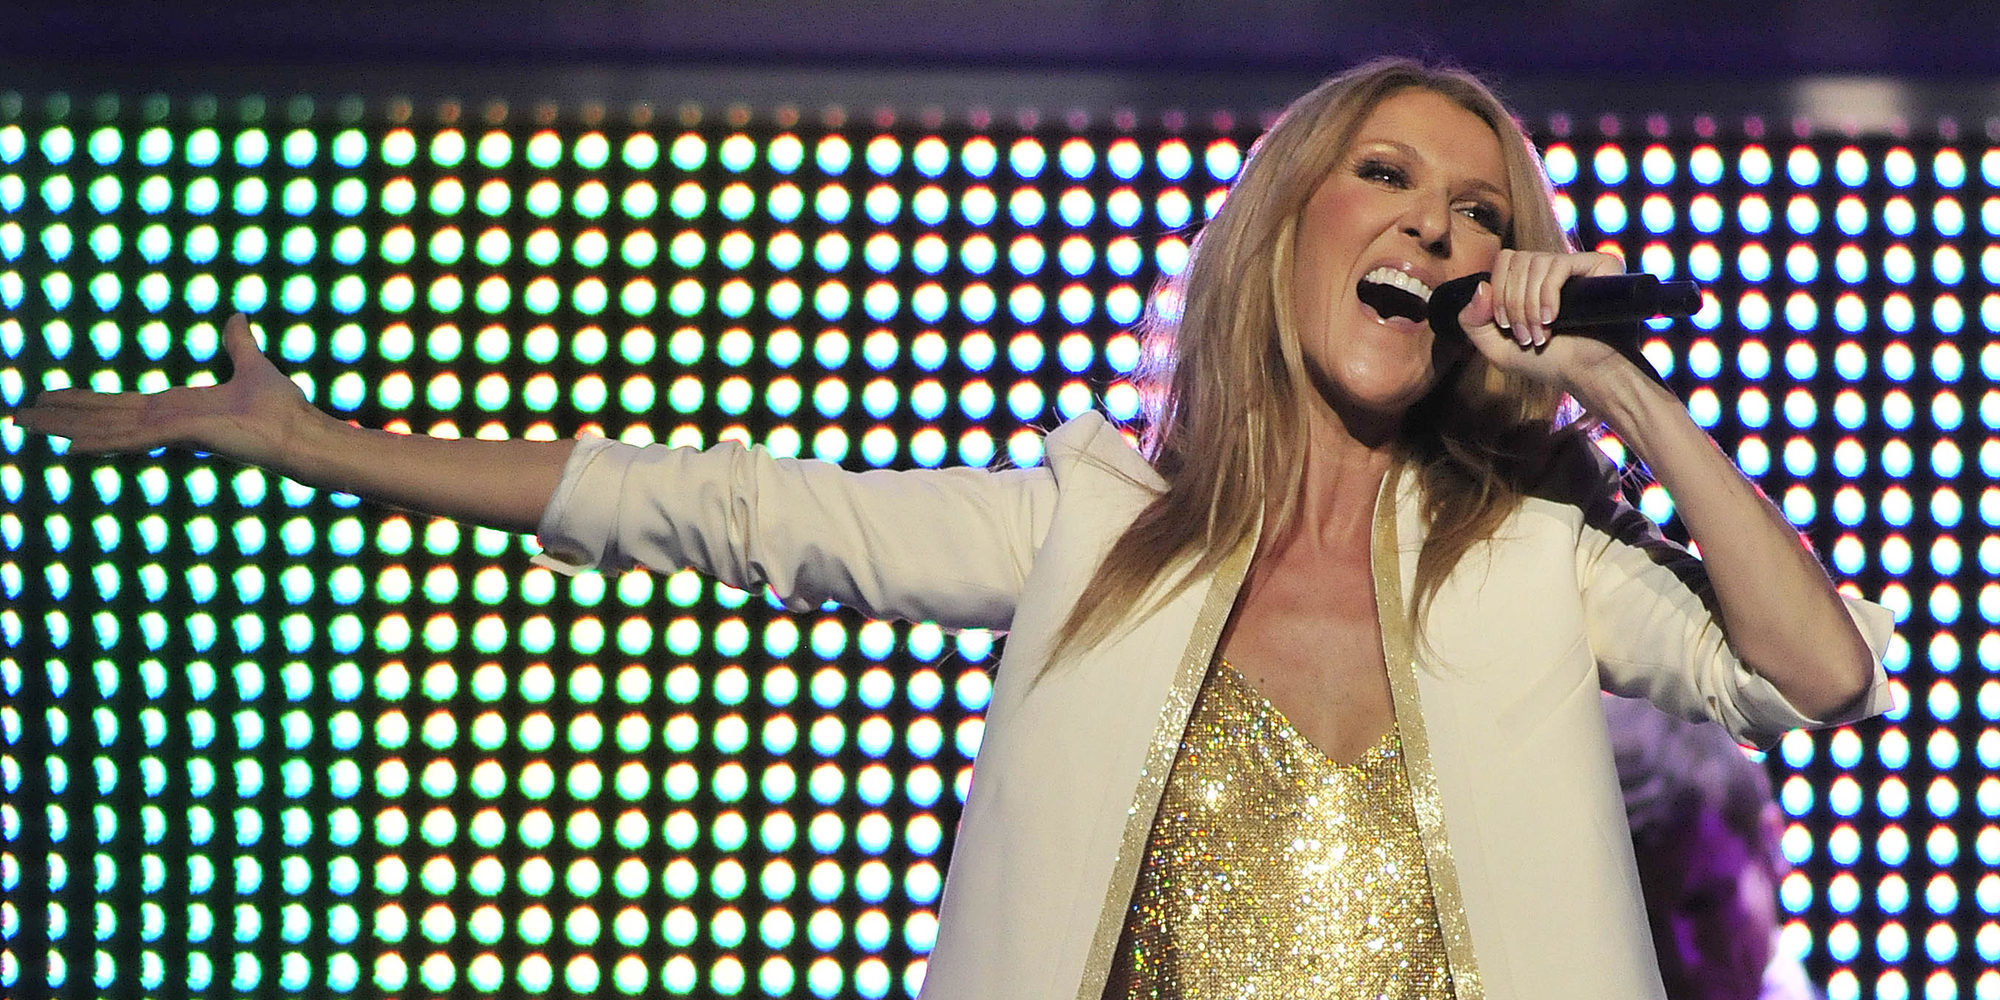 Céline Dion rinde homenaje a las víctimas del atentado de Manchester durante su concierto en Las Vegas